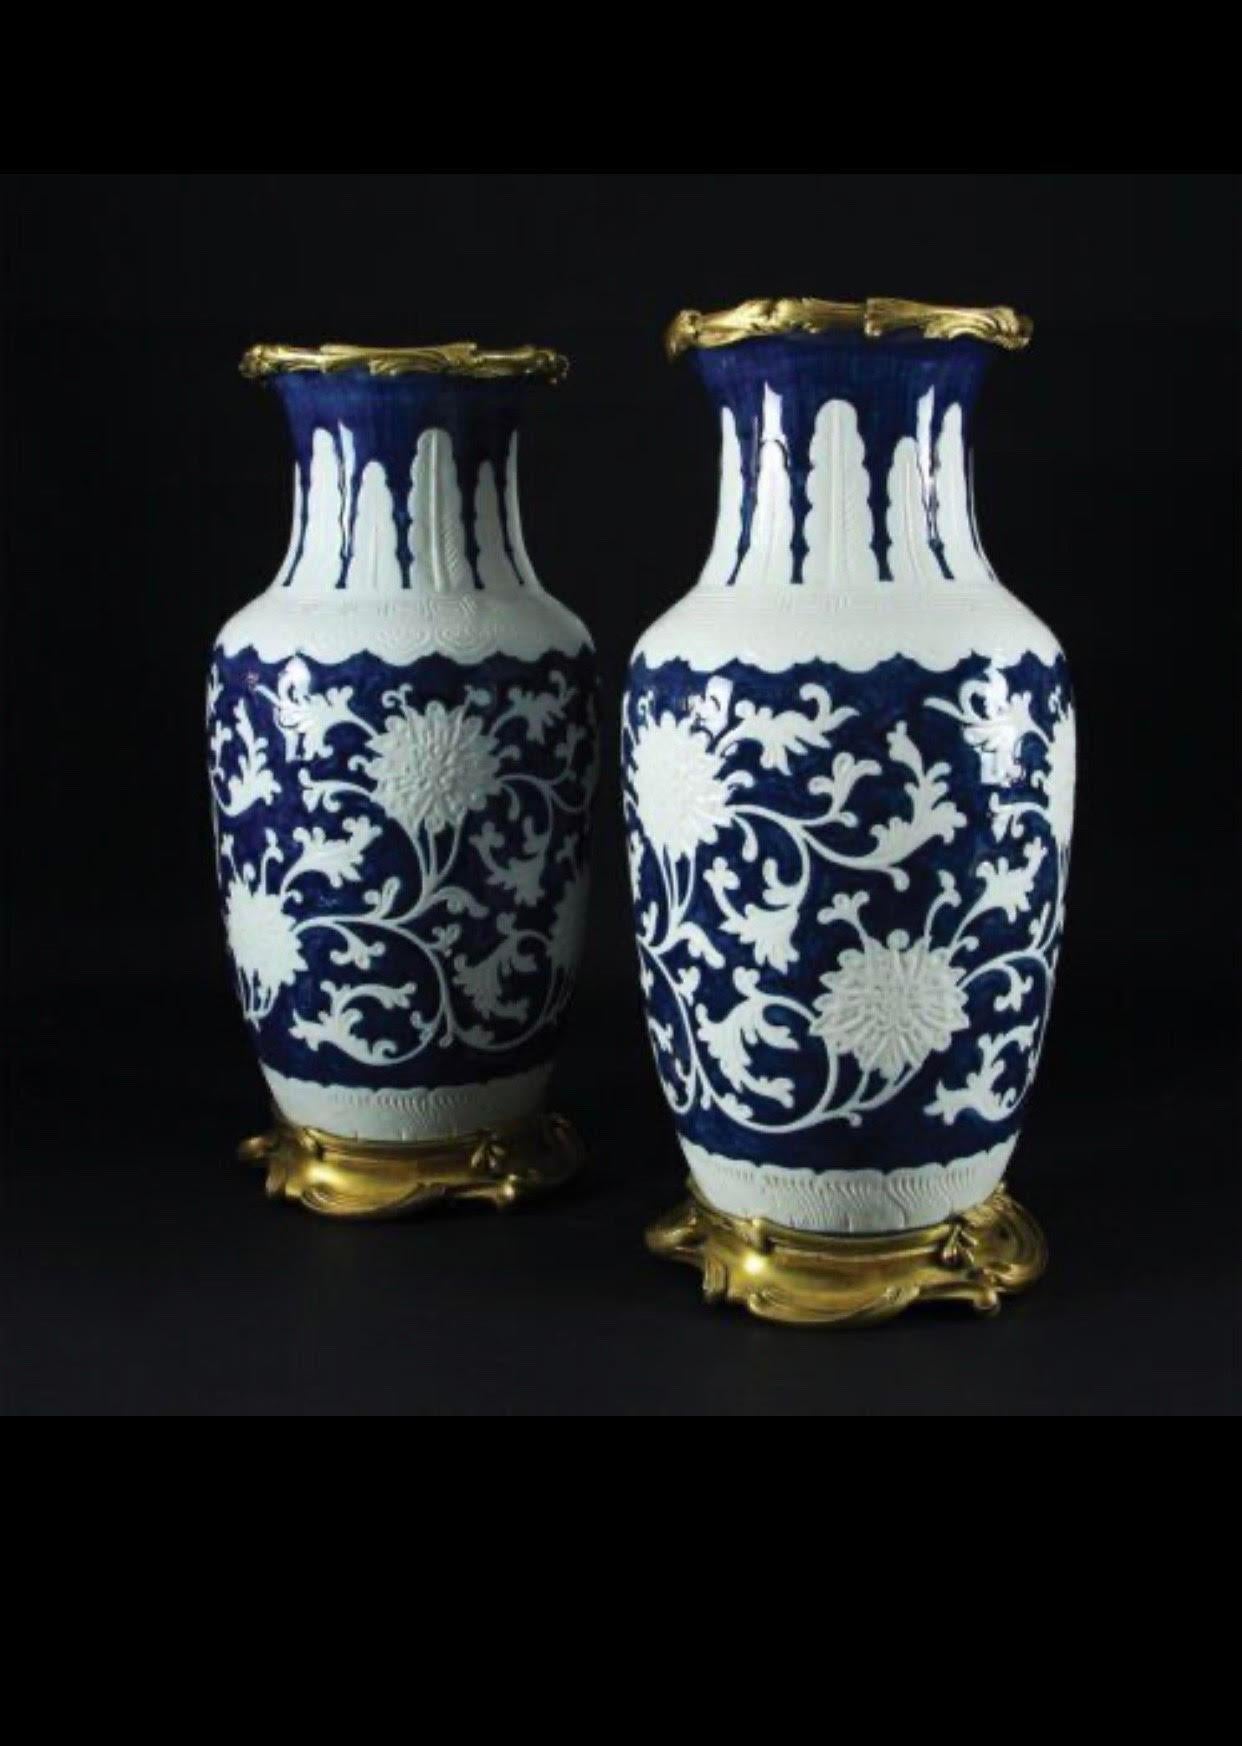 Élégante paire de vases en porcelaine bleue et blanche finement décorés de motifs floraux ; monture en bronze doré et ciselée de volutes. Chine, 19ème siècle. Dimensions 48x19x19cm.